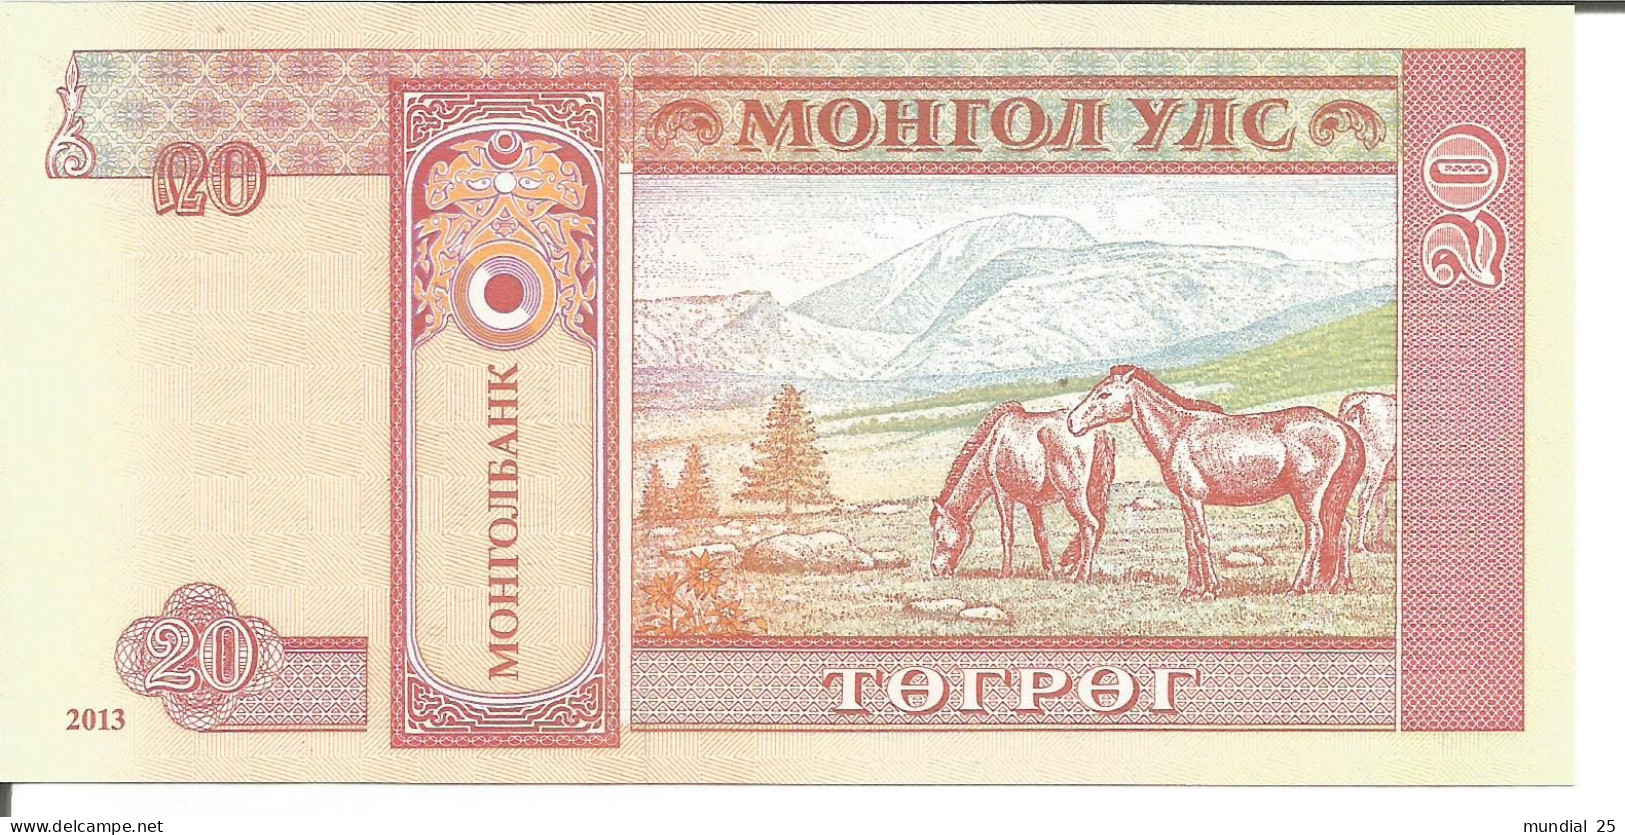 3 MONGOLIA NOTES 20 TUGRIK 2013 - Mongolia